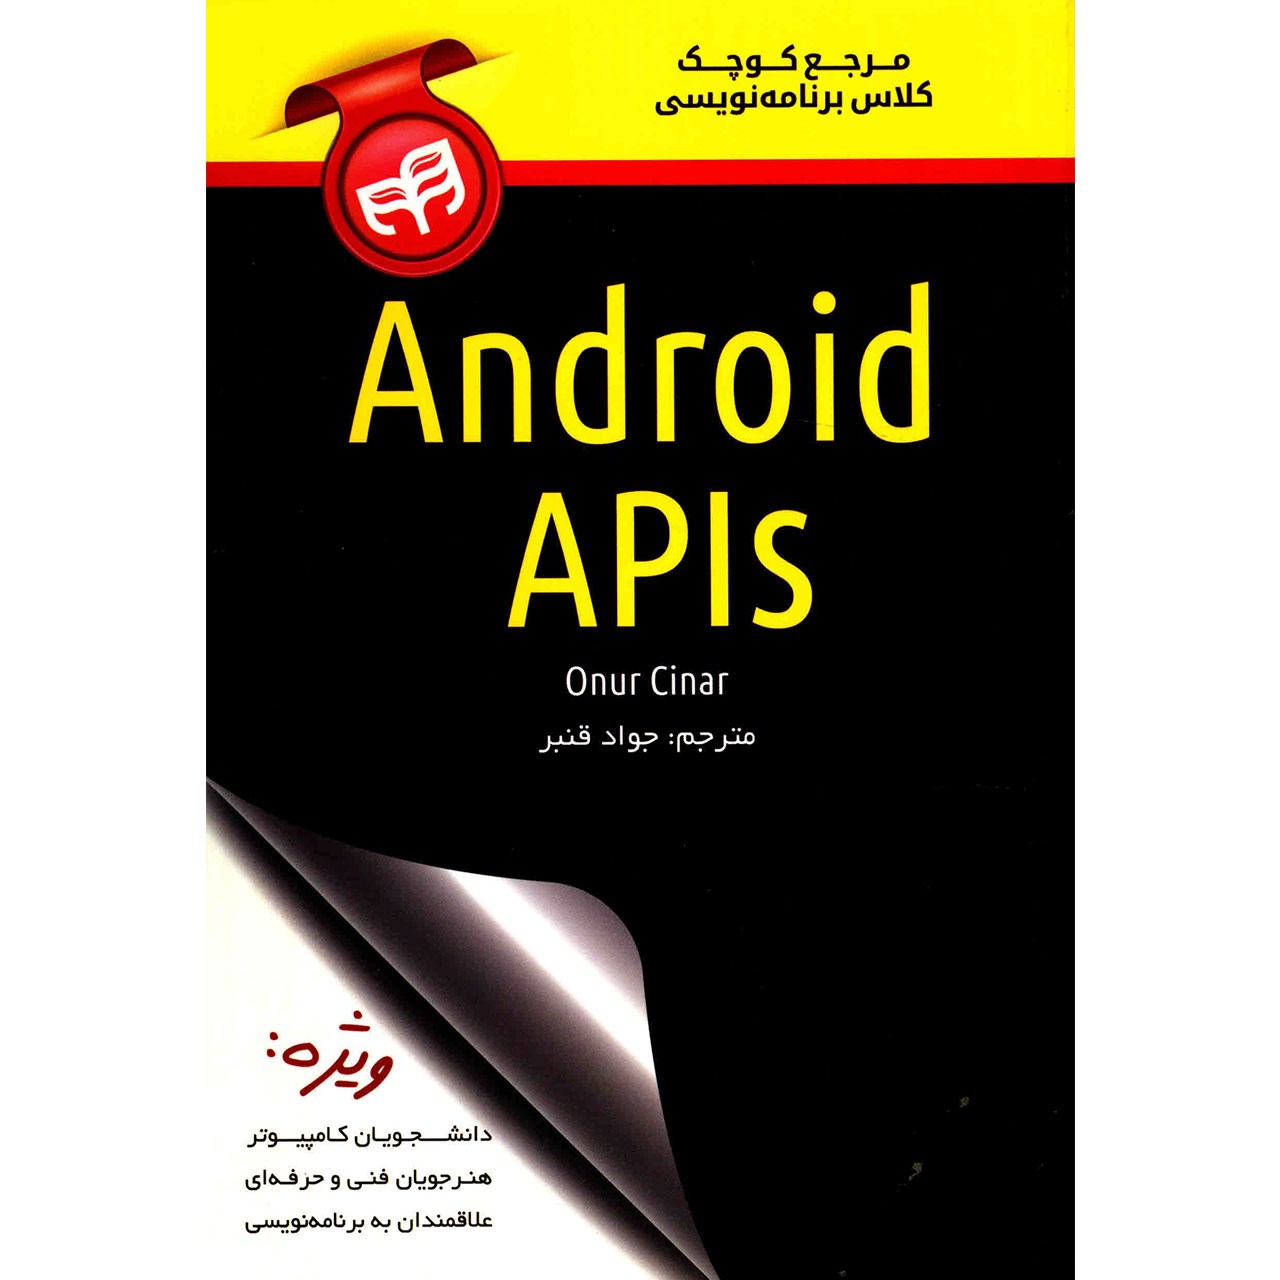 کتاب مرجع کوچک کلاس برنامه نویسی Android APIs اثر اونور چنار